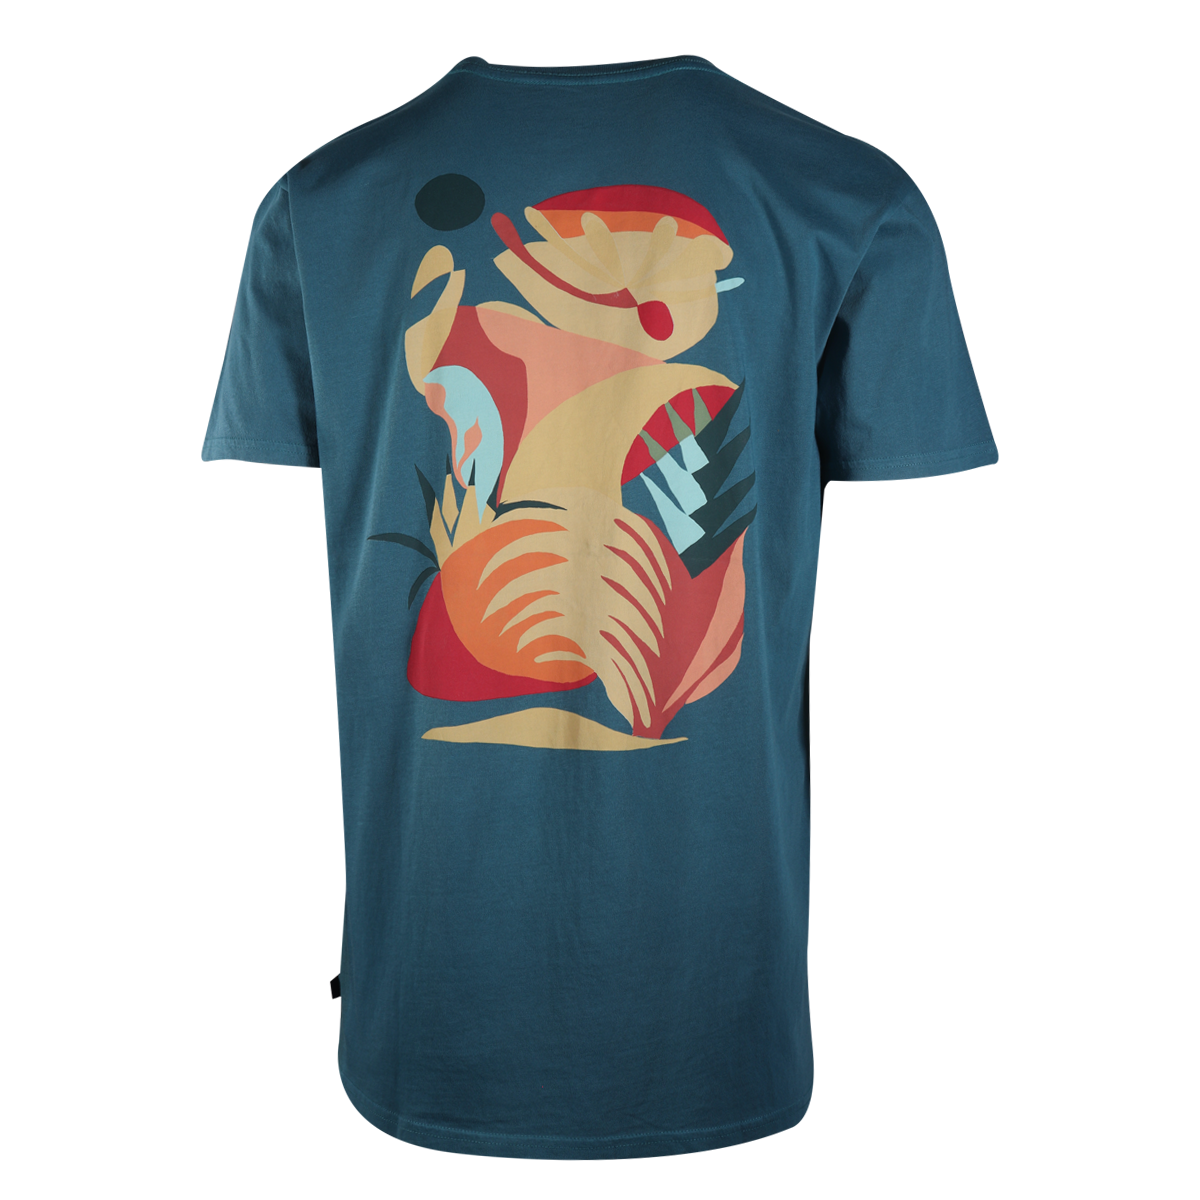 Quilsilver Men's T-Shirt Ocean Blue Wave & Mountain Graphic S/S (S10)